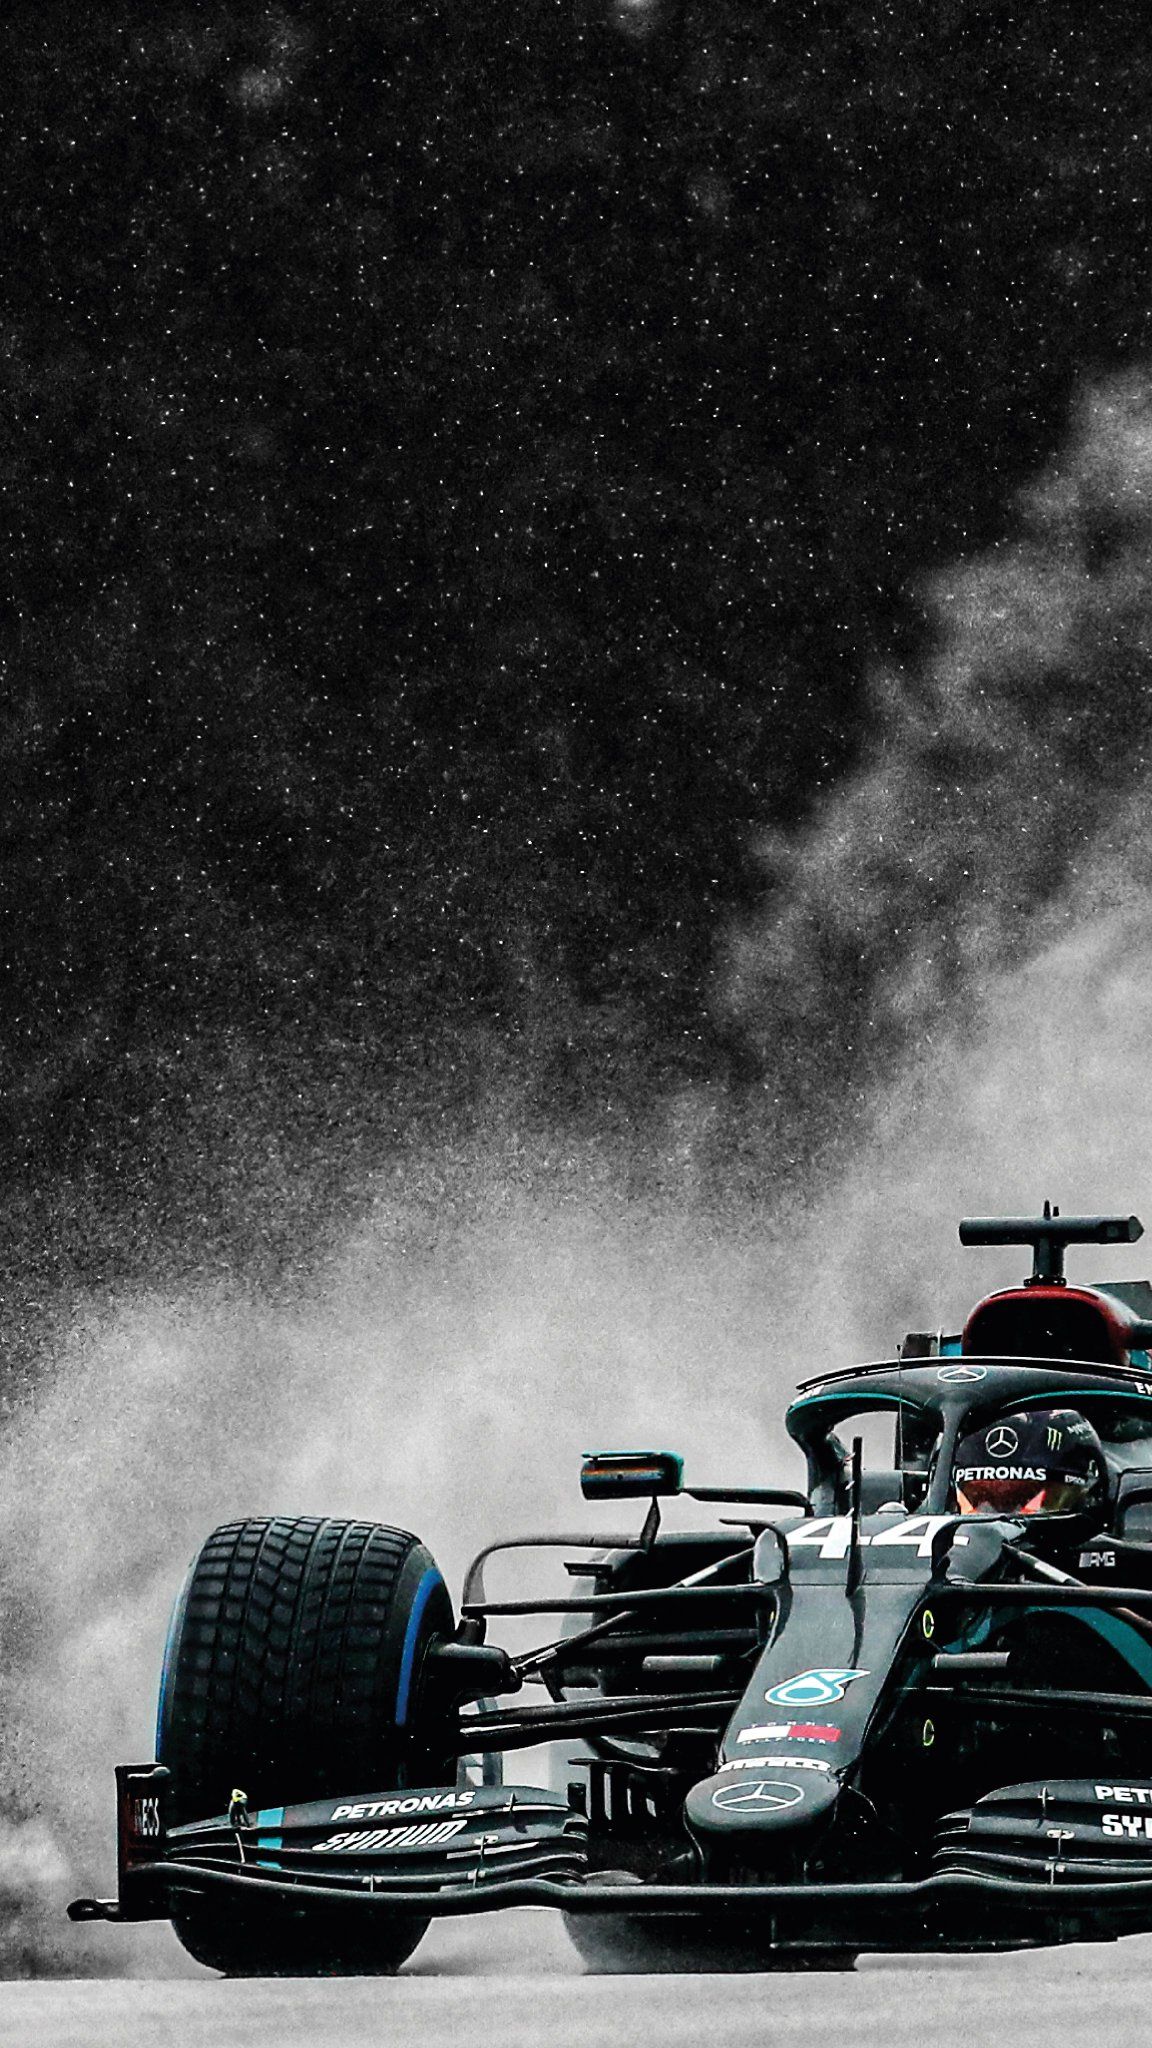 Mercedes Amg F1 On